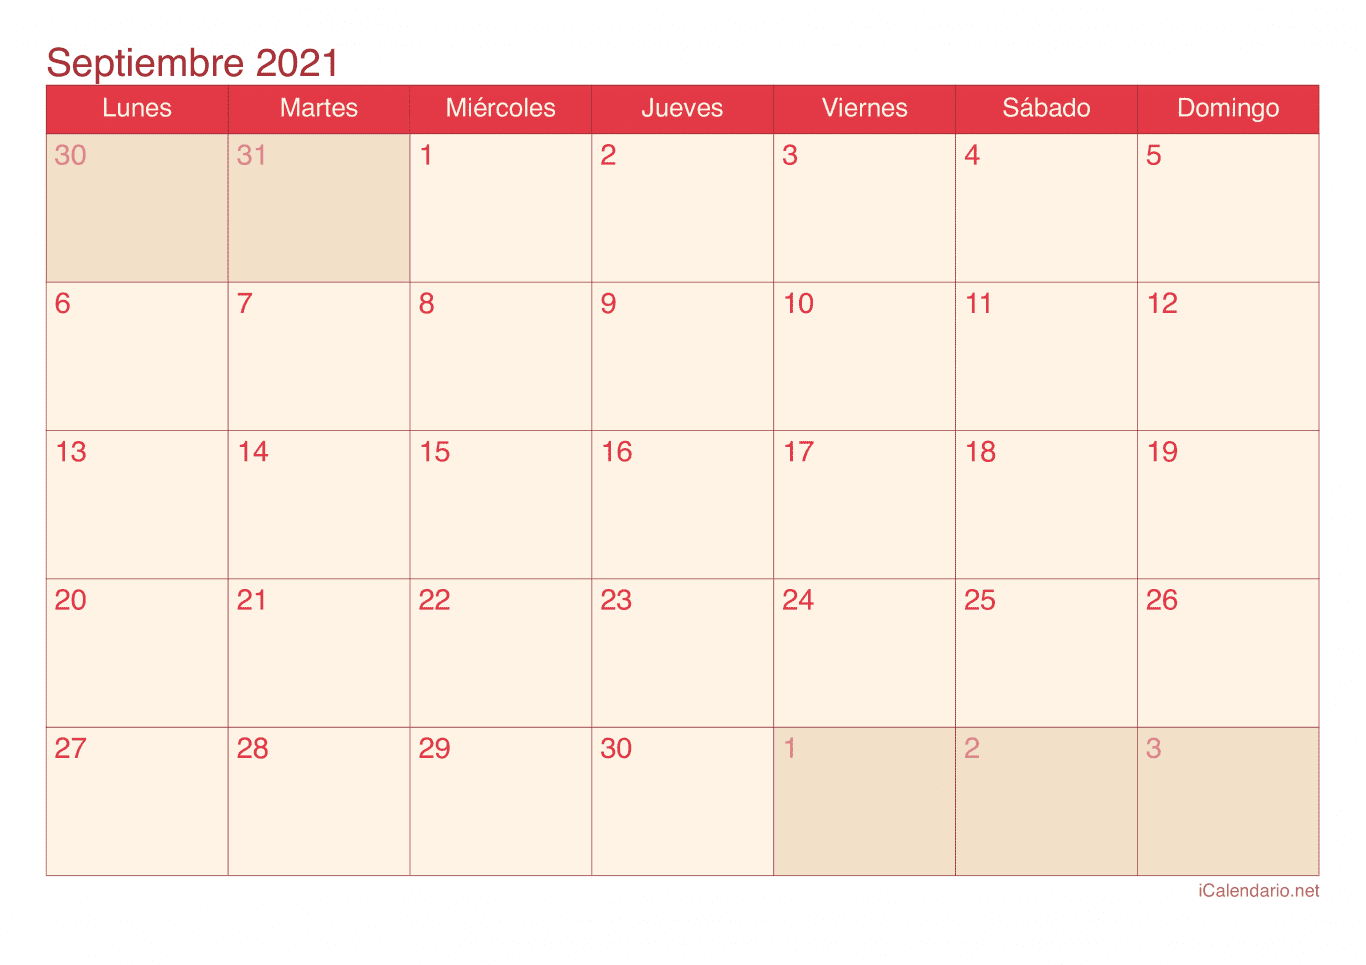 Calendario de septiembre 2021 - Cherry